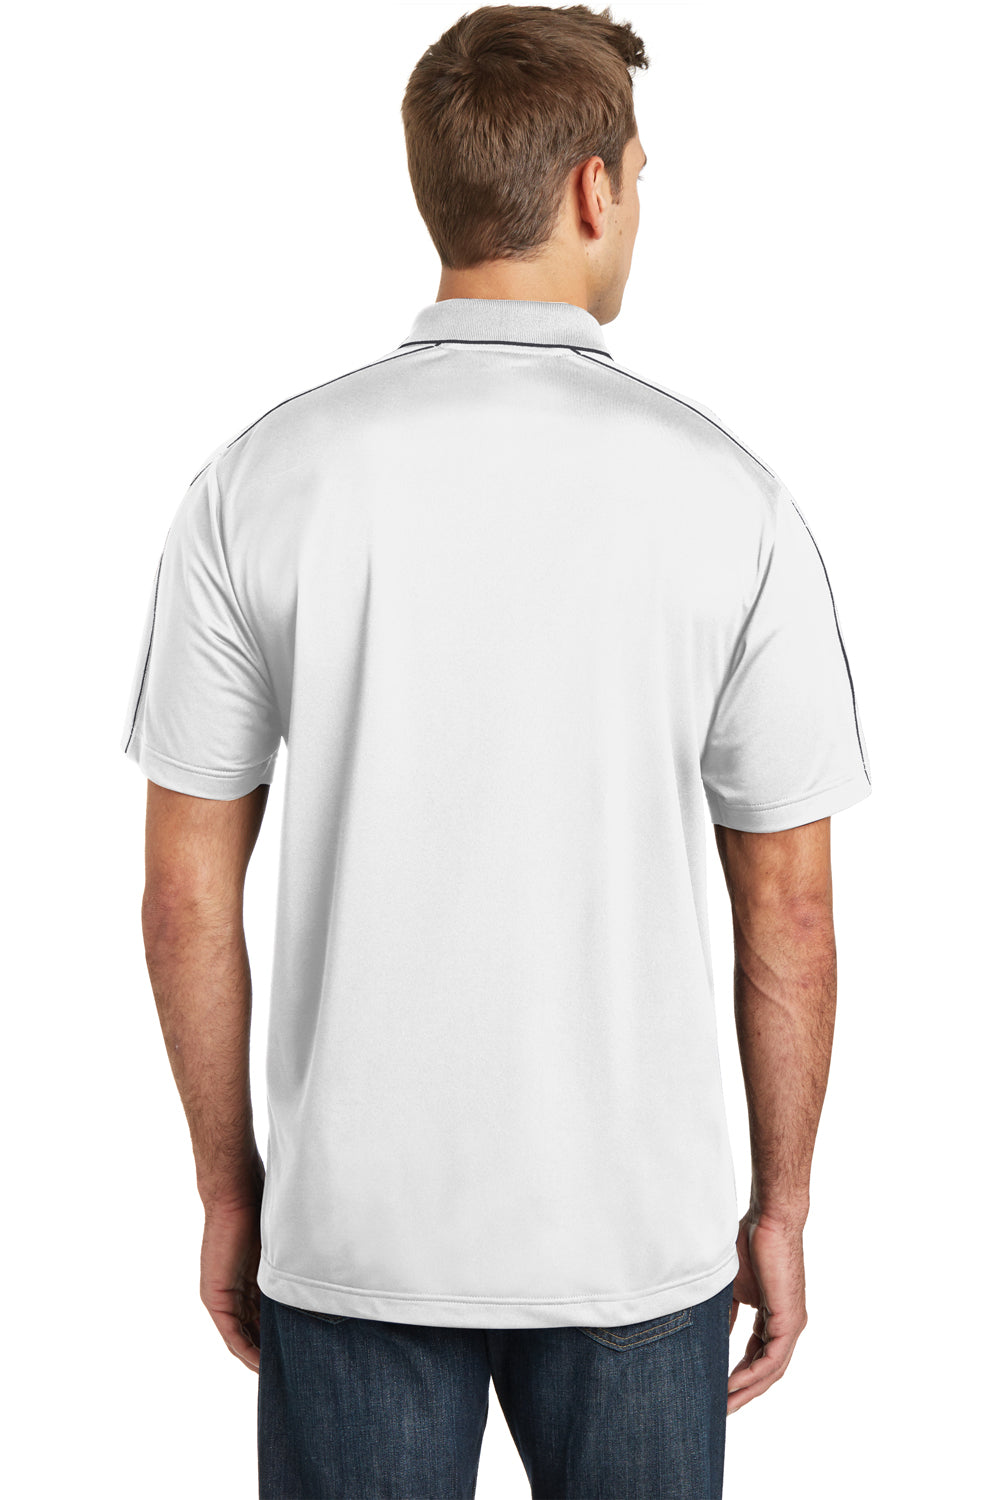 Sport-Tek ST653 Mens Sport-Wick Moisture Wicking Short Sleeve Polo Shirt White/Grey Back